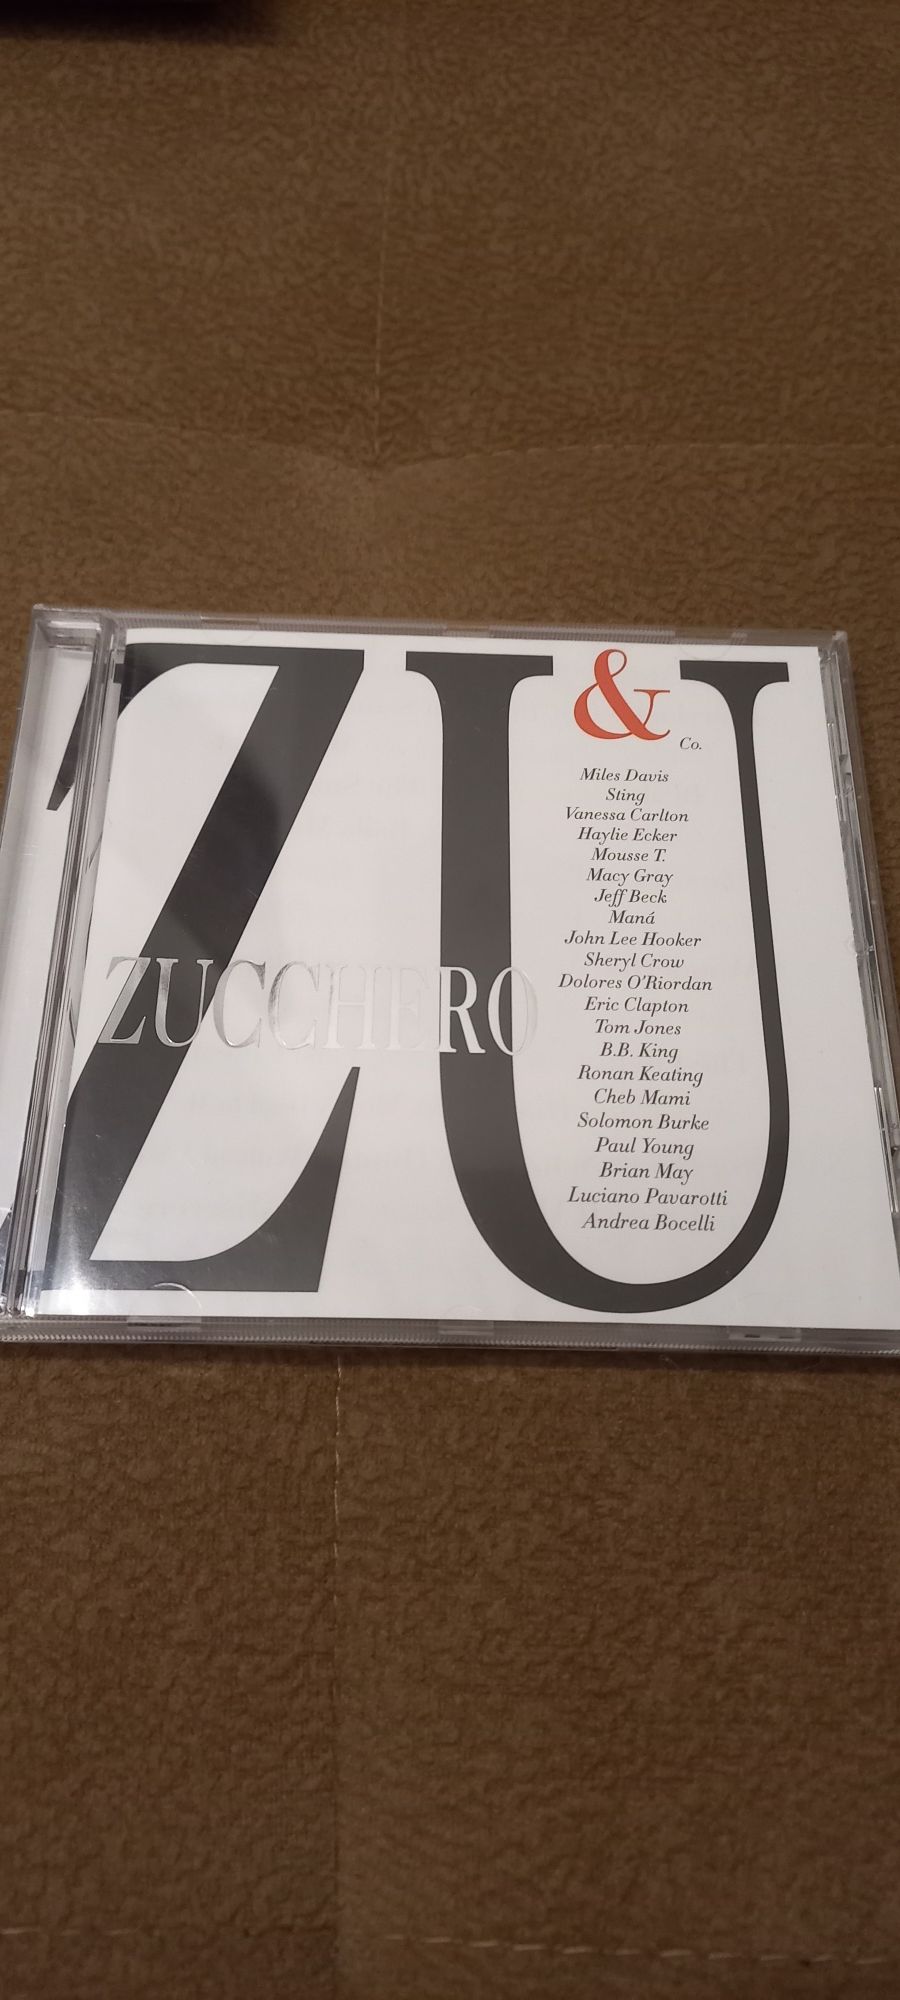 Zuchero płyta cd